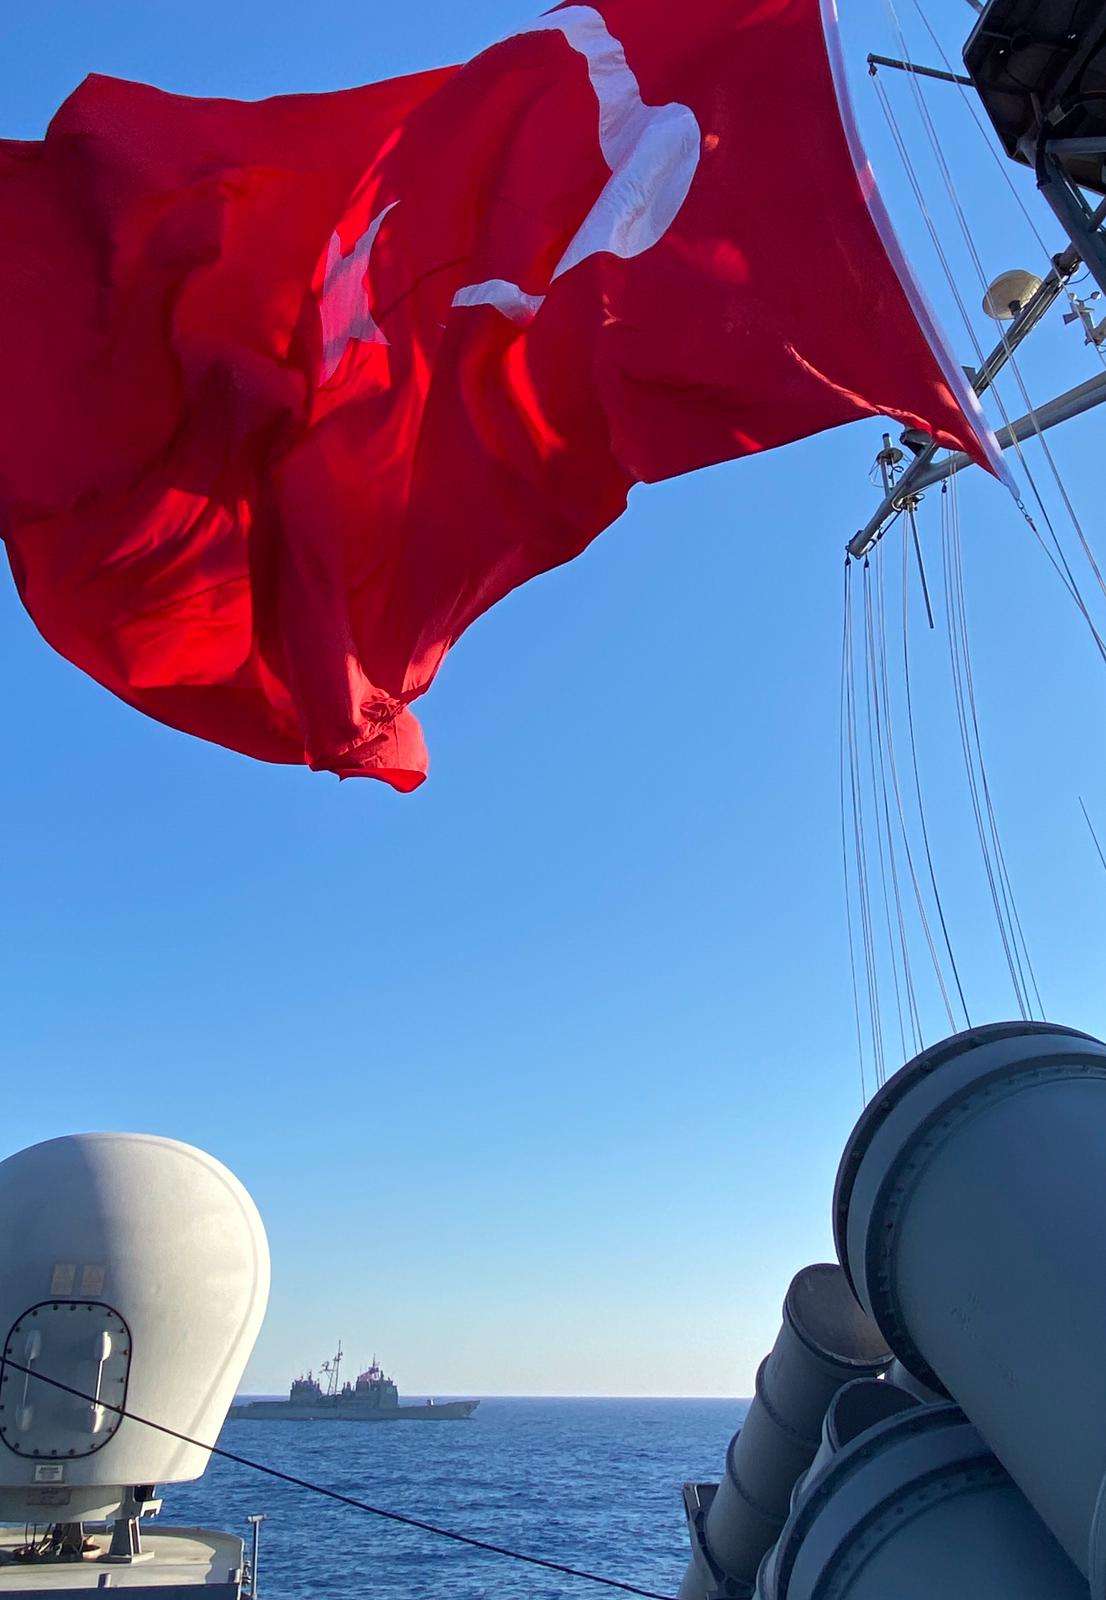 Νέα ελληνο-τουρκική κρίση εν όψει! 14 πολεμικά των Τούρκων εκτός Ακσάζ